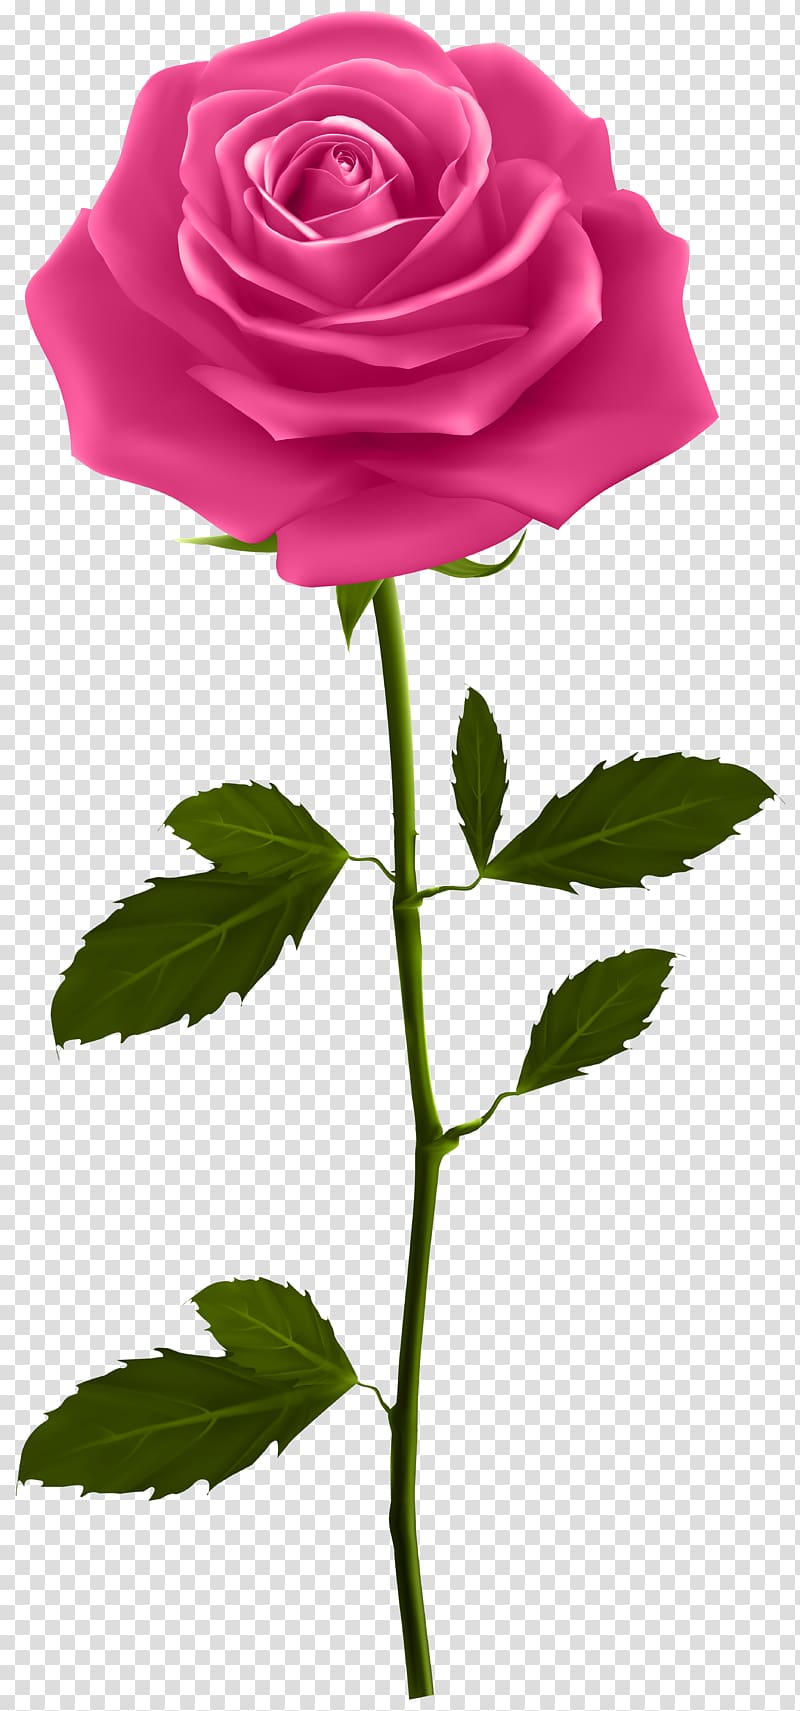 pink rose , Rose Plant stem , Pink Rose with Stem transparent background PNG clipart